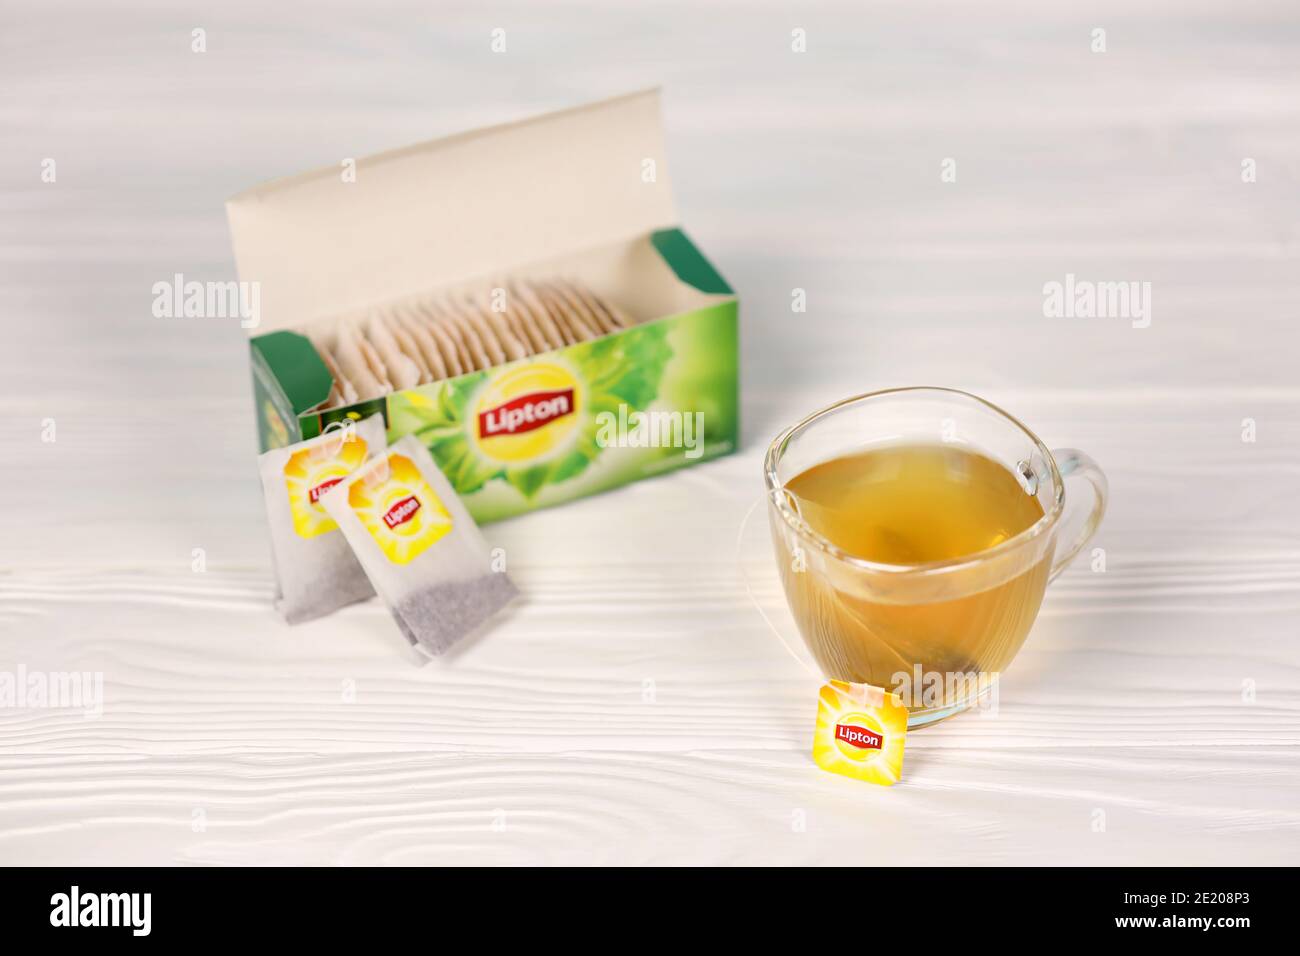 KHARKOV, UCRAINA - 8 DICEMBRE 2020: Lipton classica bustine di tè verde. Lipton è un marchio britannico di tè di proprietà di Unilever e PepsiCo Foto Stock